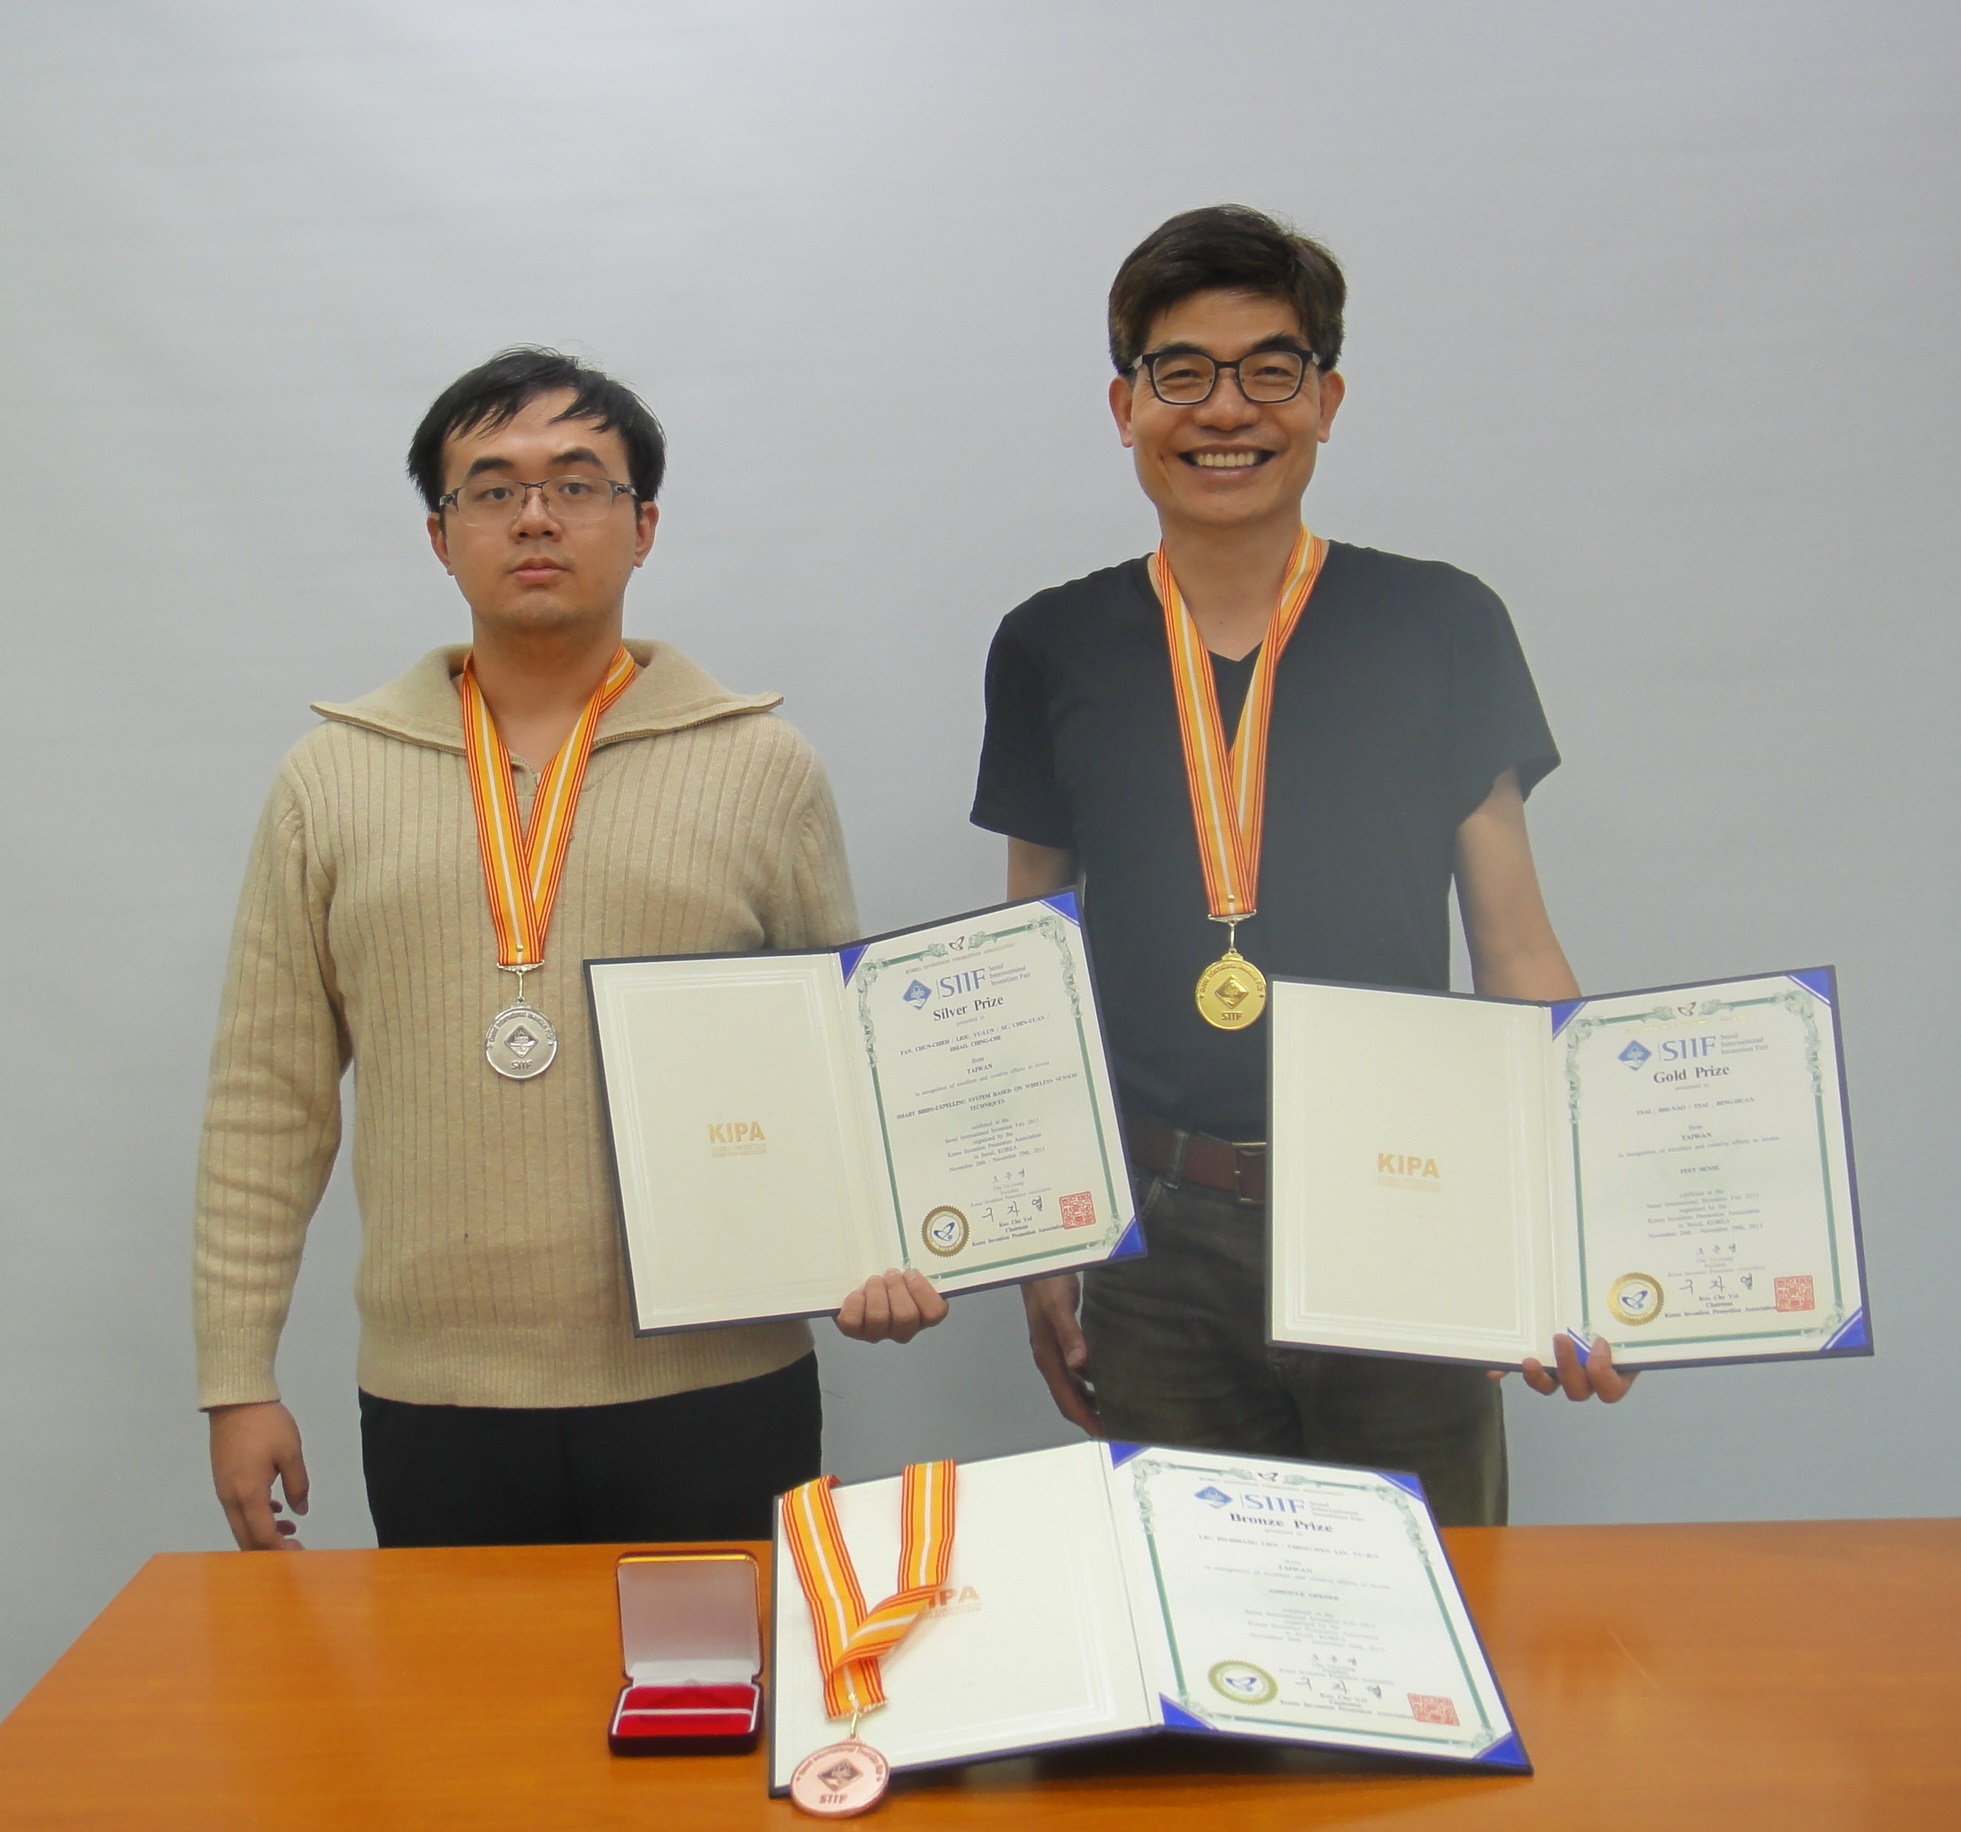 2015韓國首爾國際發明展  聖約翰科大獲得1金、1銀、1銅佳績，由創意設計系蔡錫鐃老師(圖右)代表領獎。